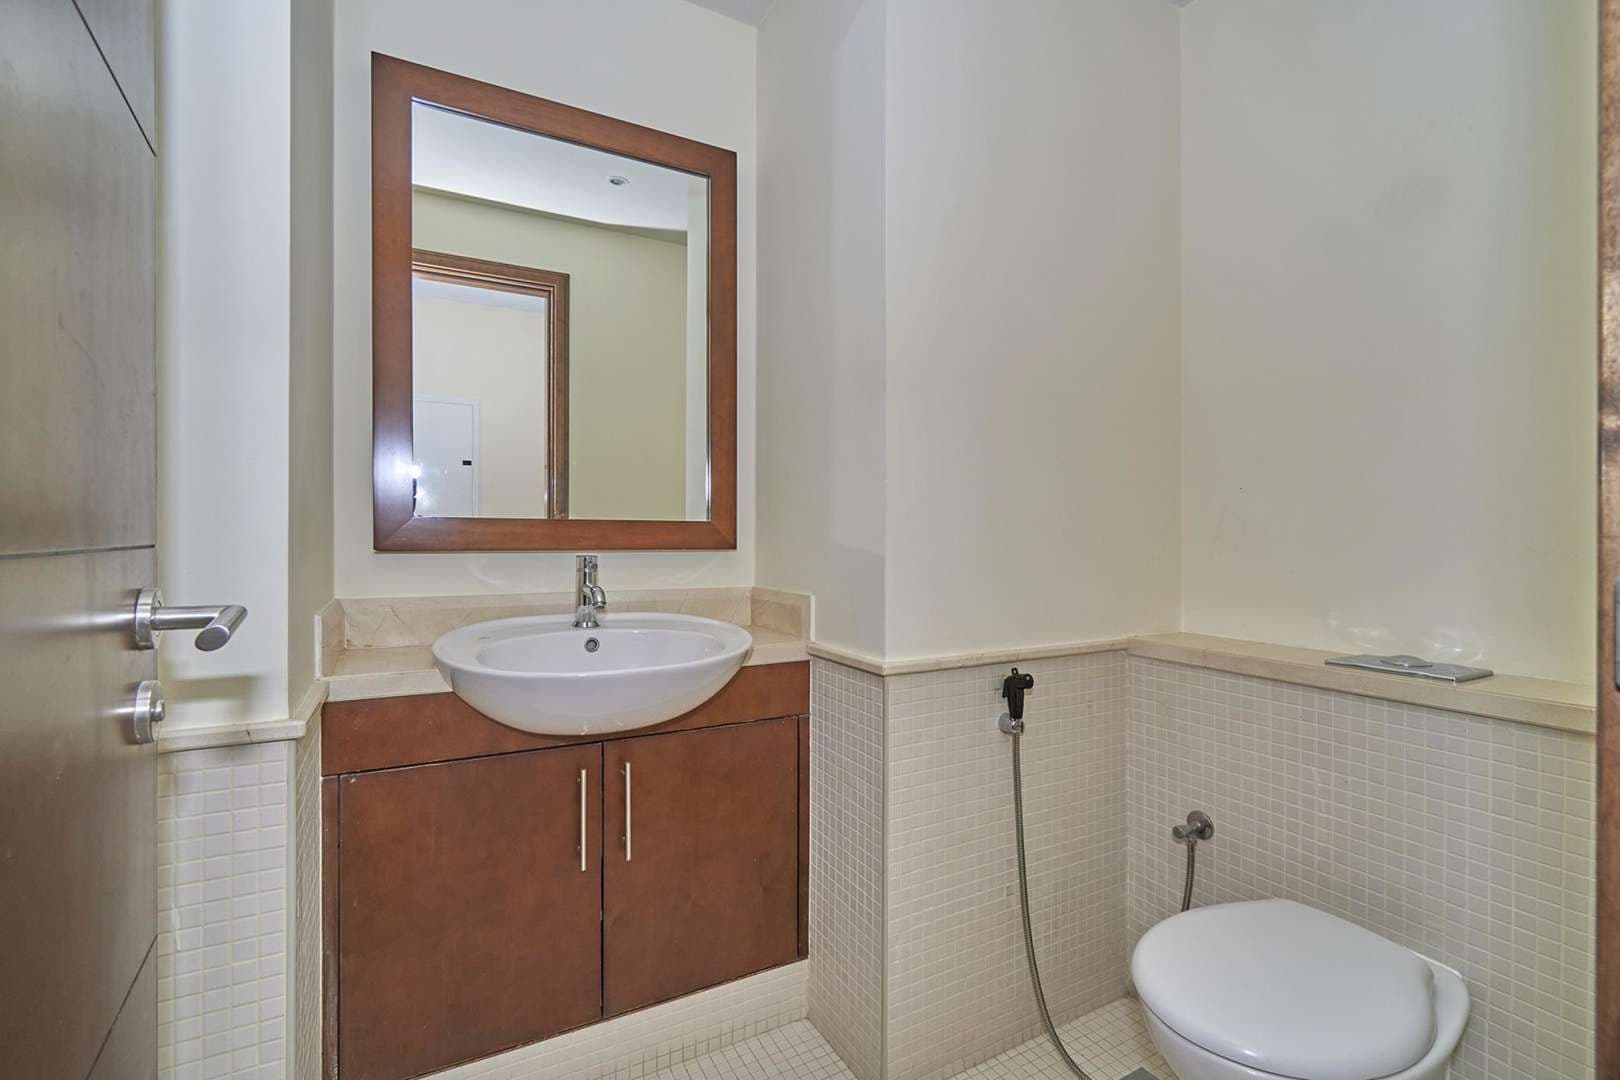 3 Bedroom Apartment For Rent South Ridge 5 Lp06152 2549085dec0a600.jpg